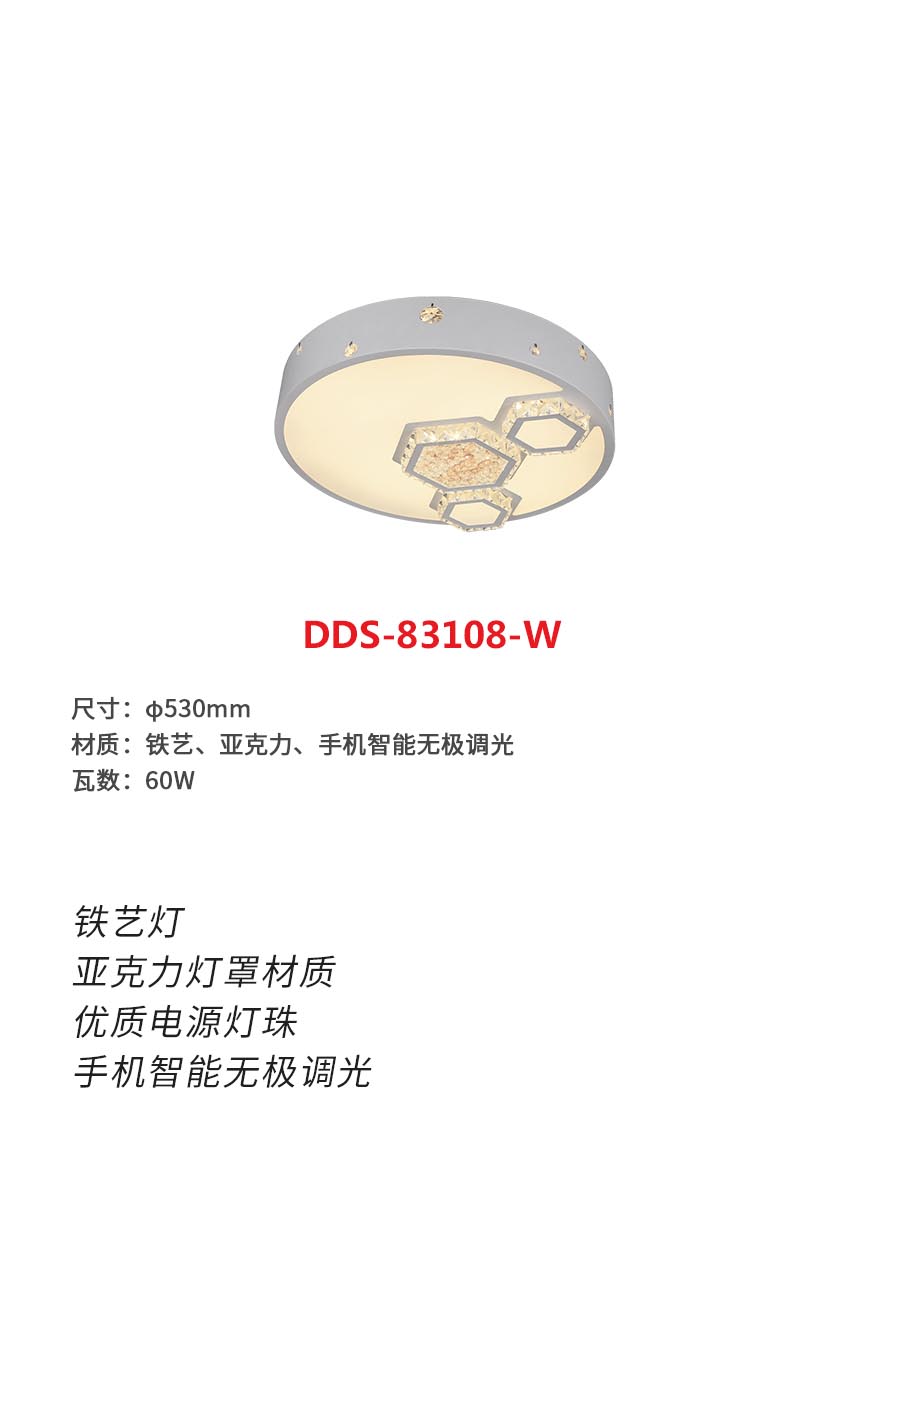 DDS-83108-wb.jpg